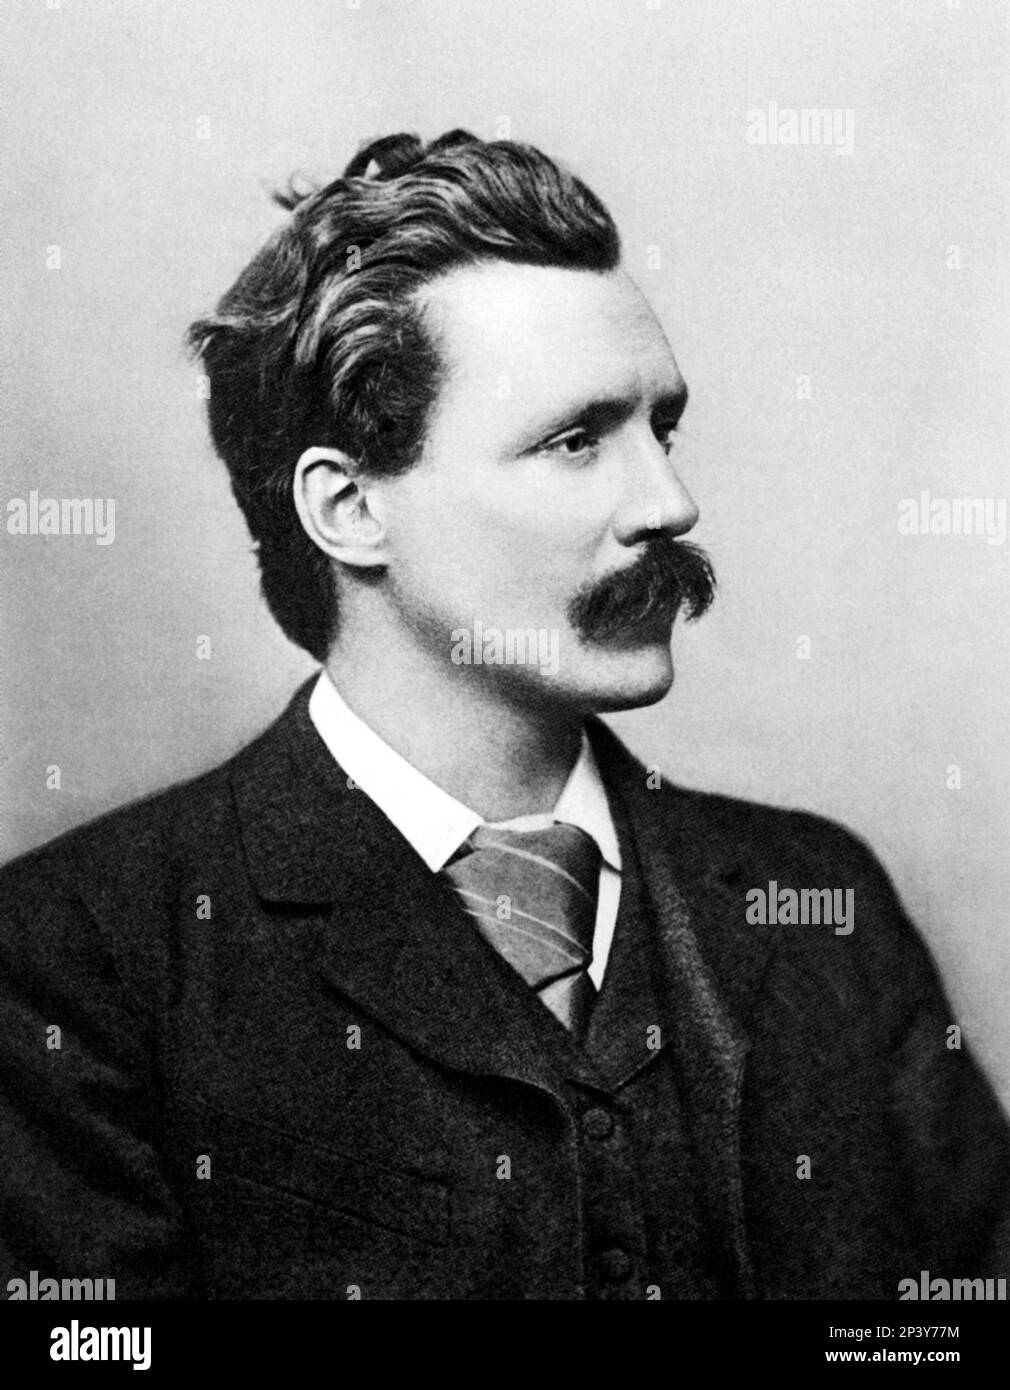 1890 ca. :the english novelist GEORGE GISSING ( 1857 - 1903  ) , friend of  the british science-fiction writer H G WELLS ( Herbert George , Bromley 1866 - London 1946 )  - H. G. - LETTERATO - LETTERATURA - LIRERATURE - sci-fiction - FANTASCIENZA - fanta-scienza - portrait - ritratto - profilo - profile - baffi - moustache - tie - cravatta - collar - colletto  ----  Archivio GBB Stock Photo